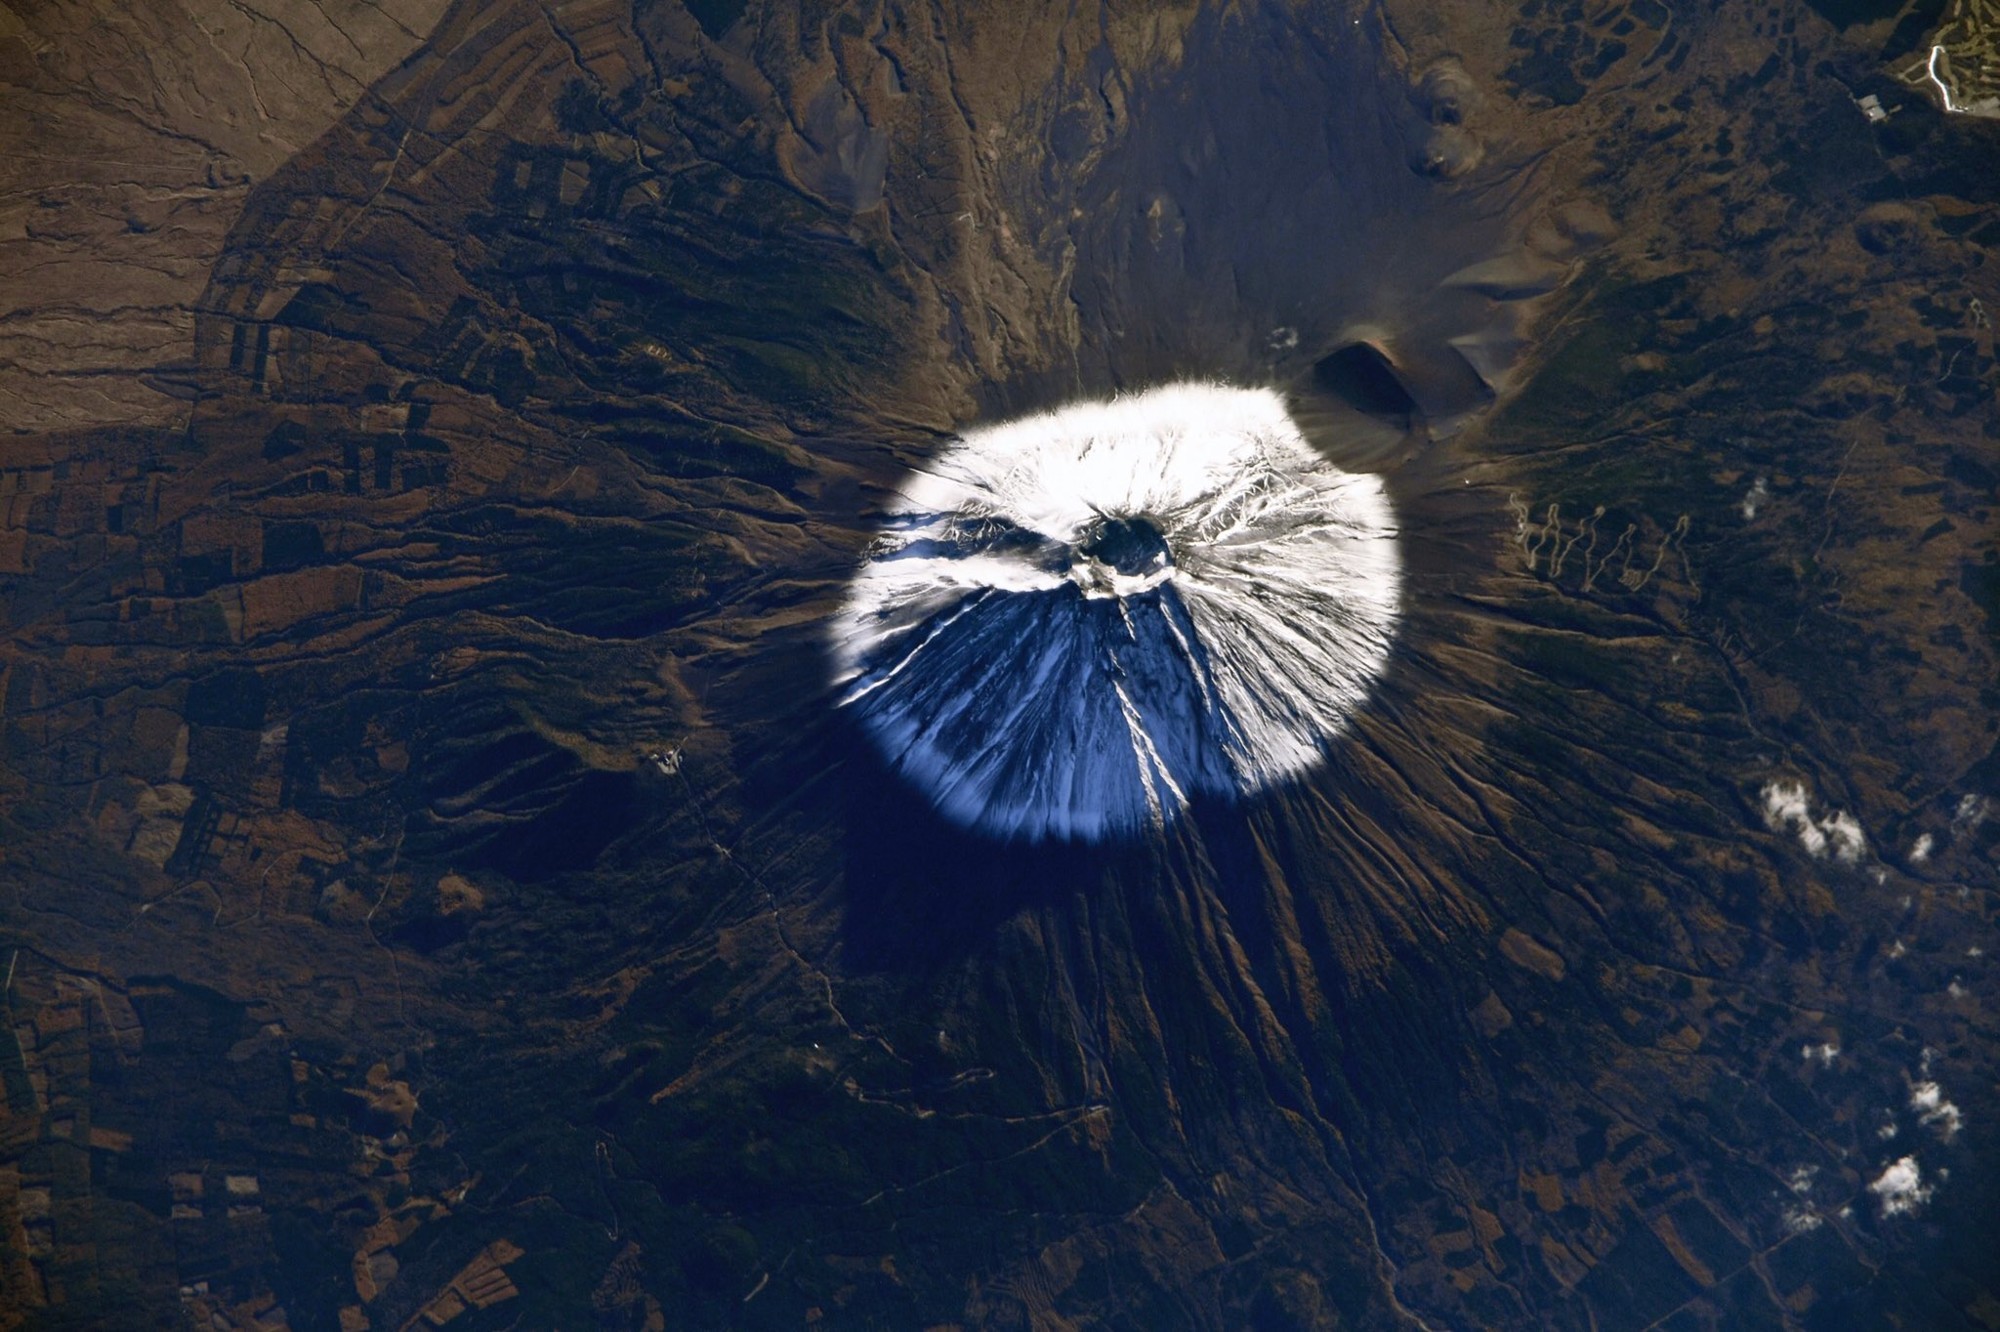 Вулкан Фудзияма из космоса